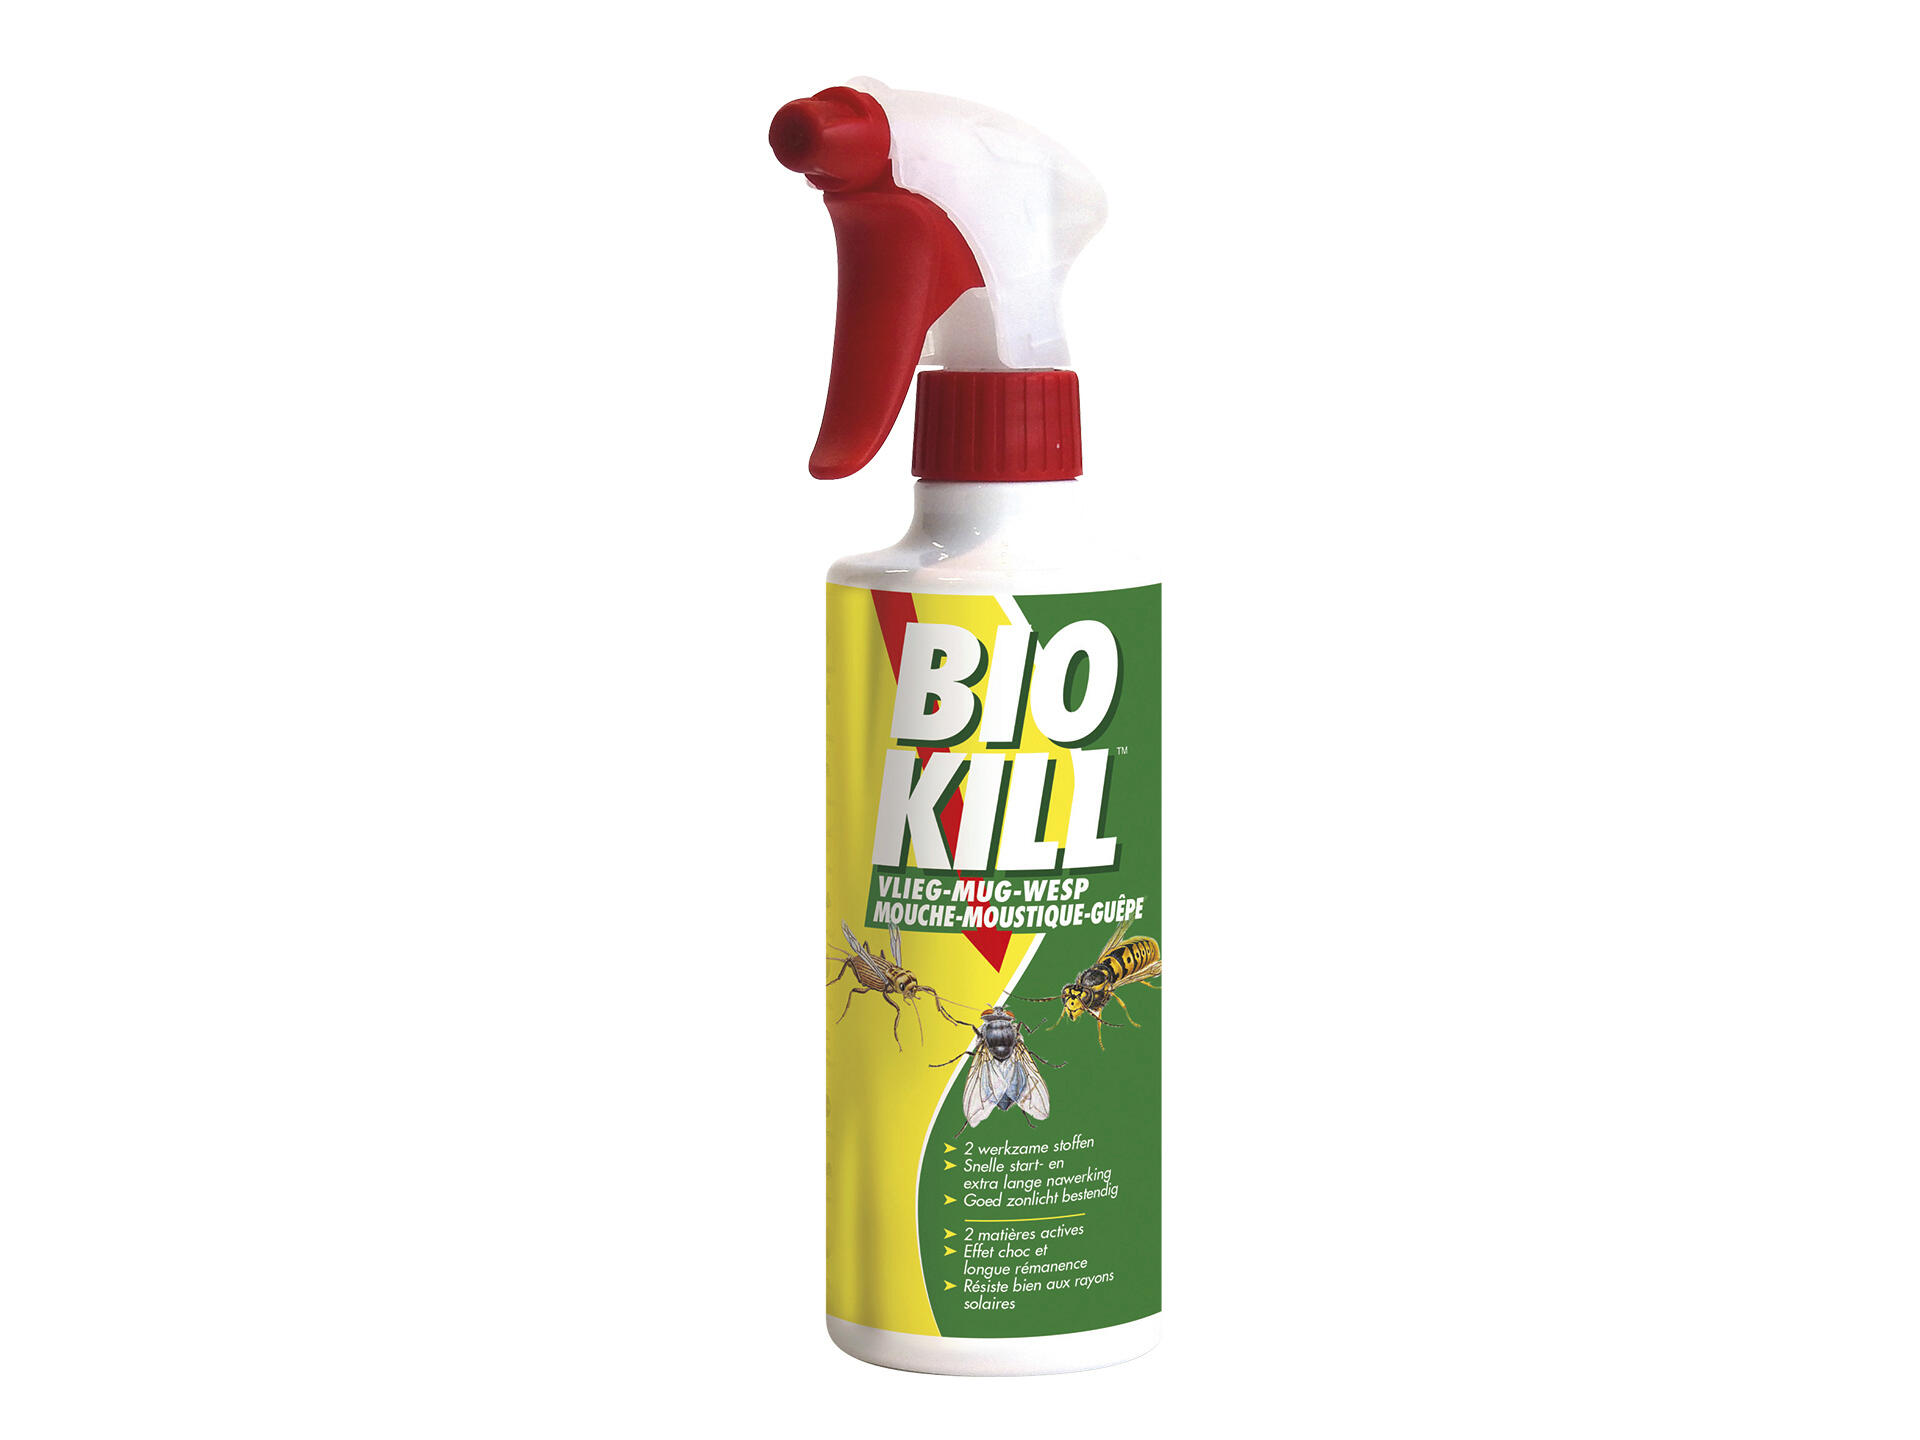 Bio Kill spray insecticide mouche/moustique/guêpe 375ml